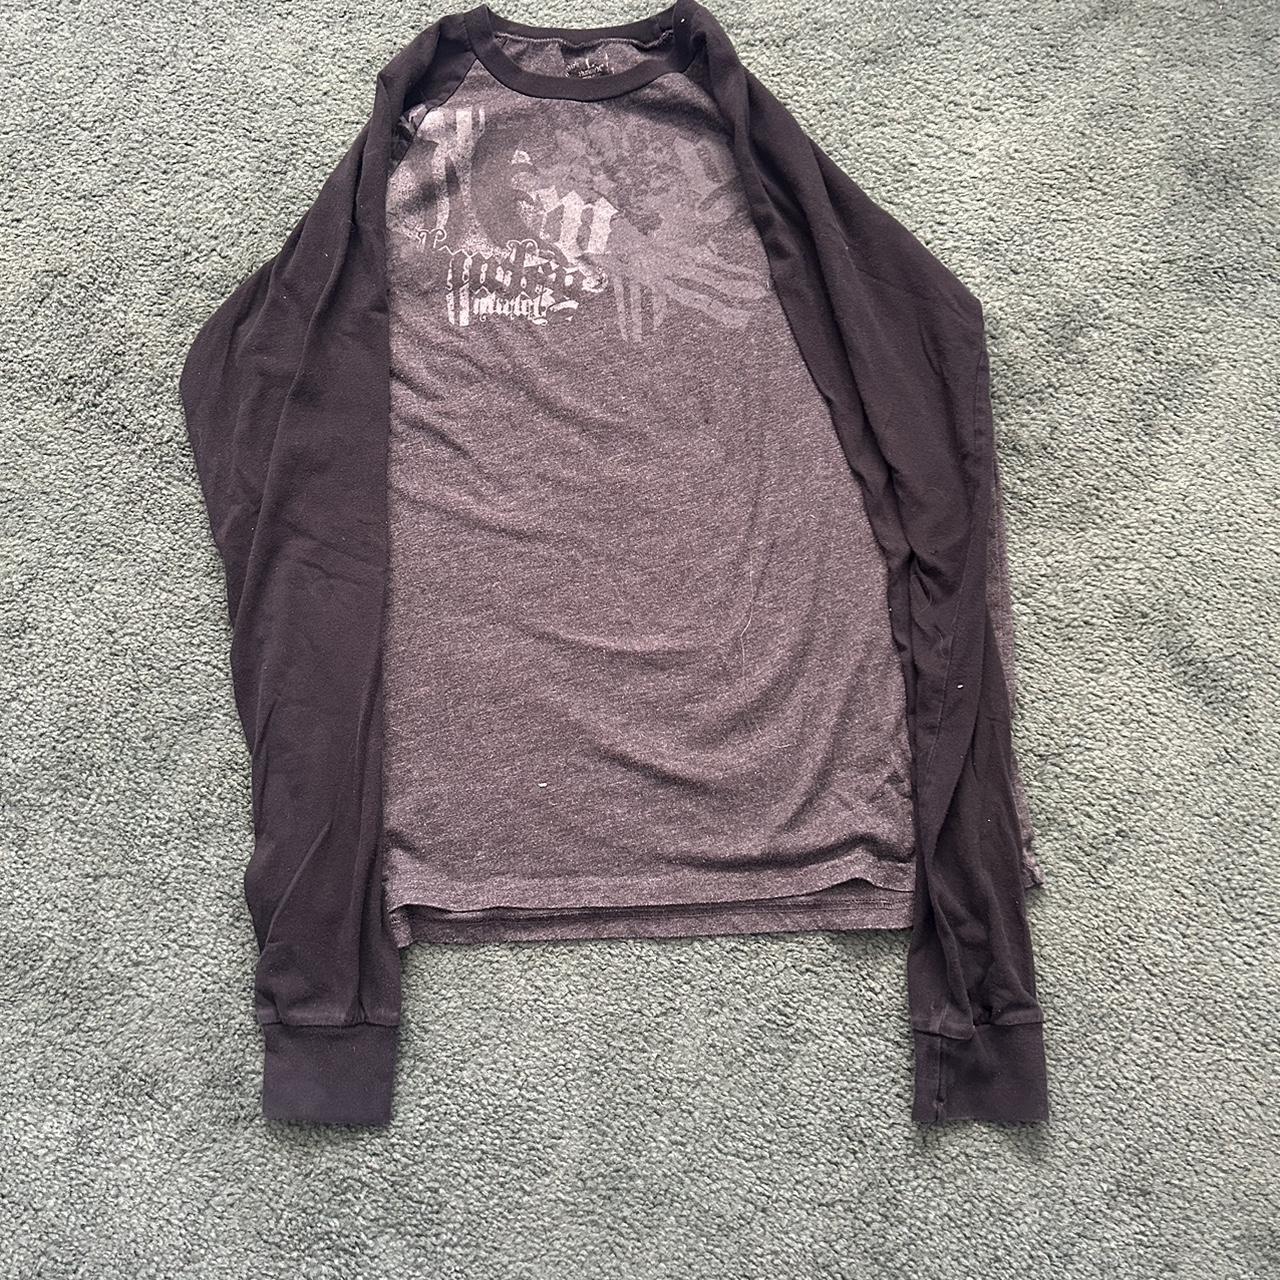 Crazy vintage Hurley shirt size large #grunge #y2k... - Depop